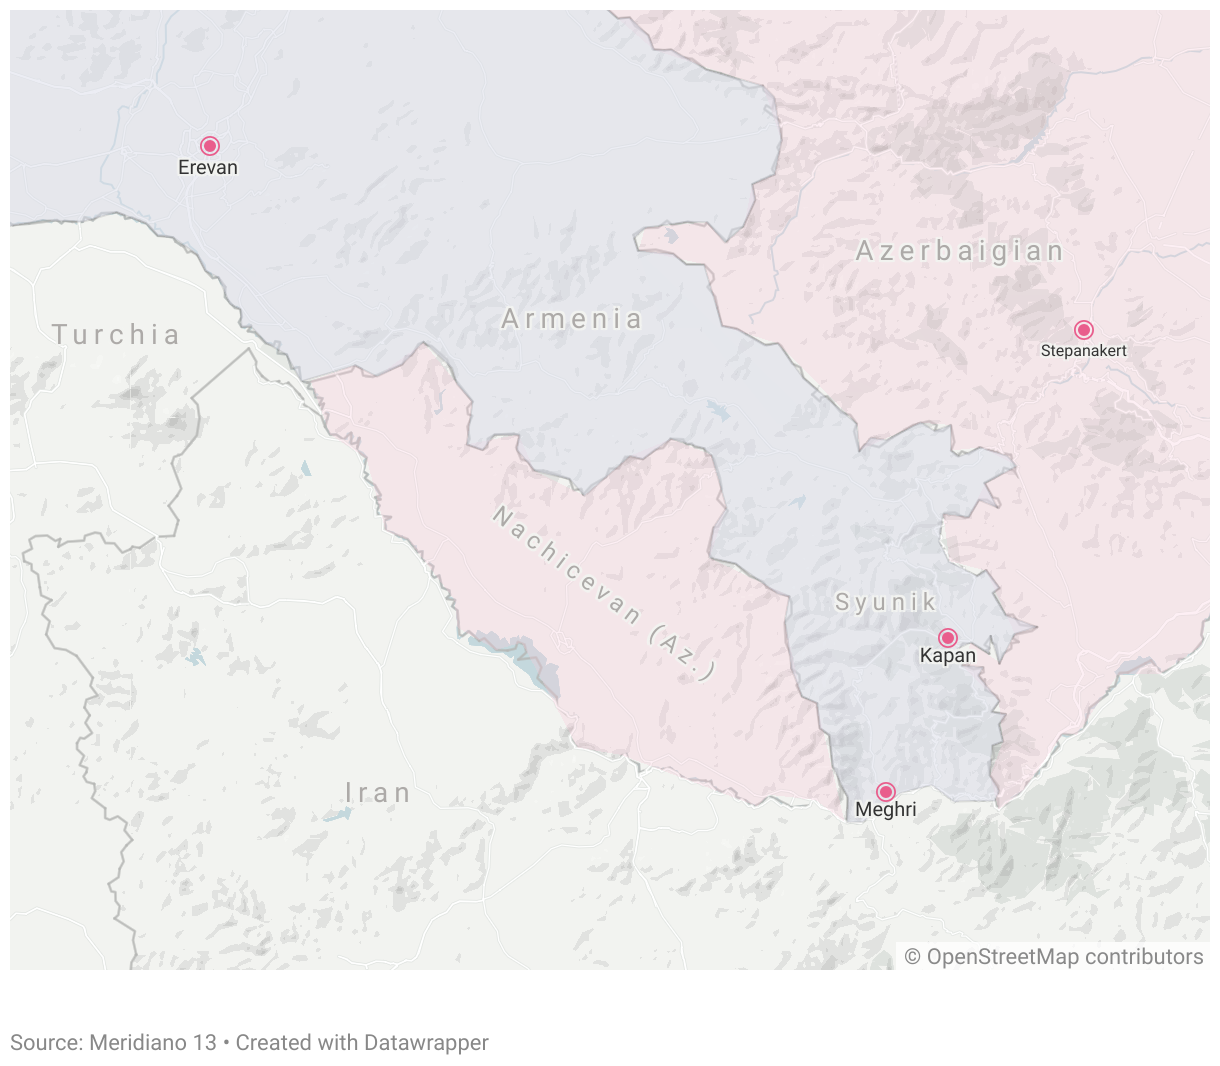 Prima della resa del Nagorno-Karabakh, la regione appariva così